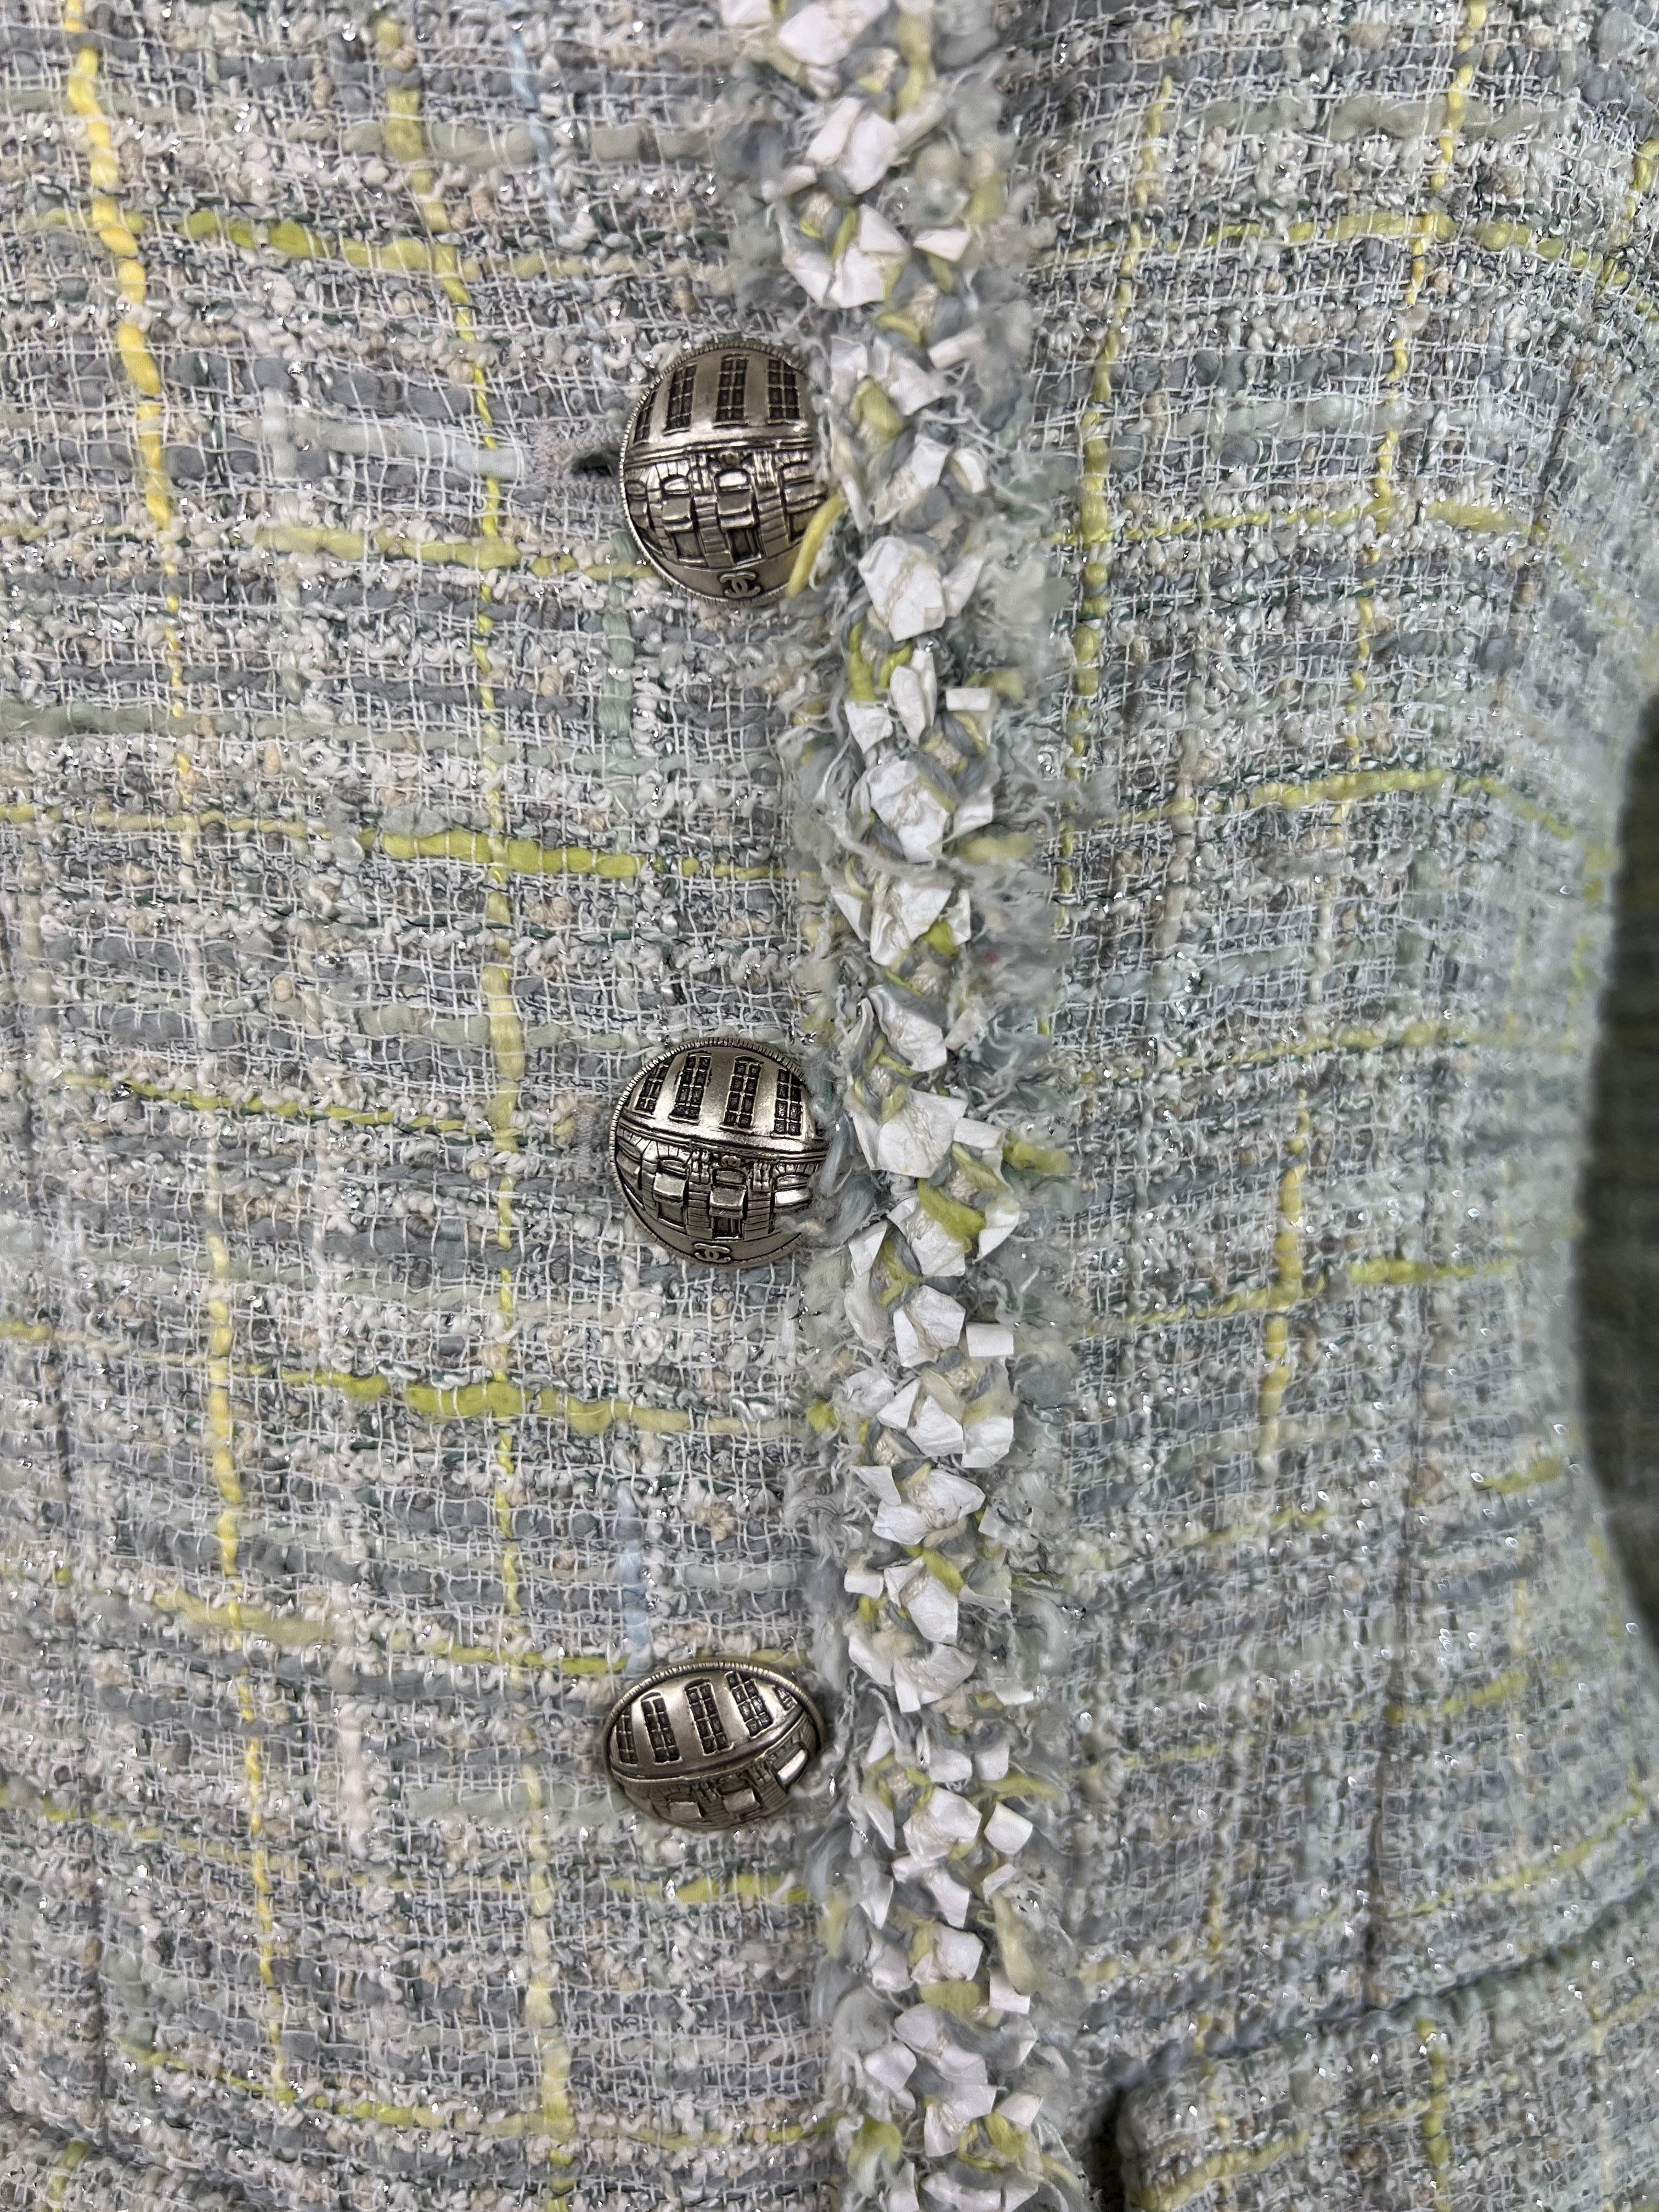 Détails du produit :

La veste présente des couleurs grises, jaunes et argentées, avec trois boutons argentés sur le devant, deux poches sur le devant, une encolure ras du cou et deux boutons argentés sur chaque manche. 